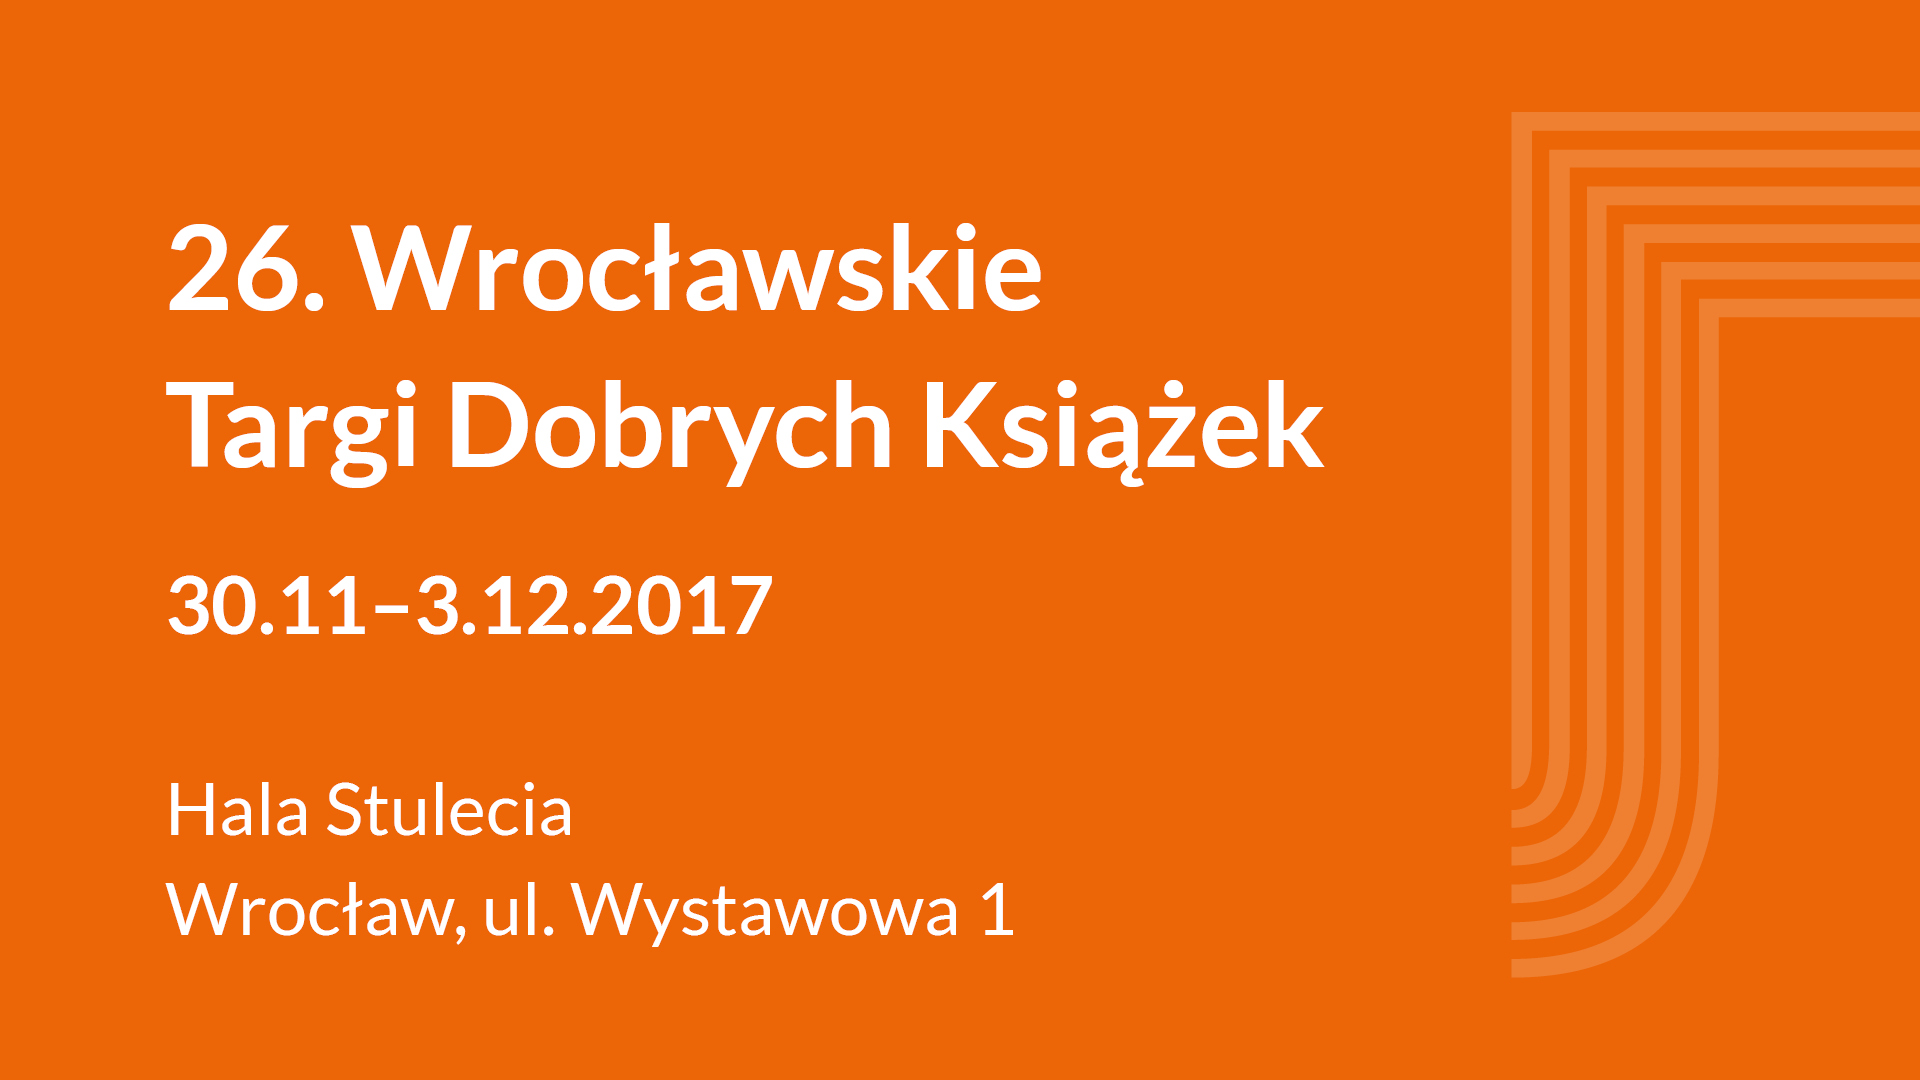 26. Wrocławskie Promocje Dobrych Książek